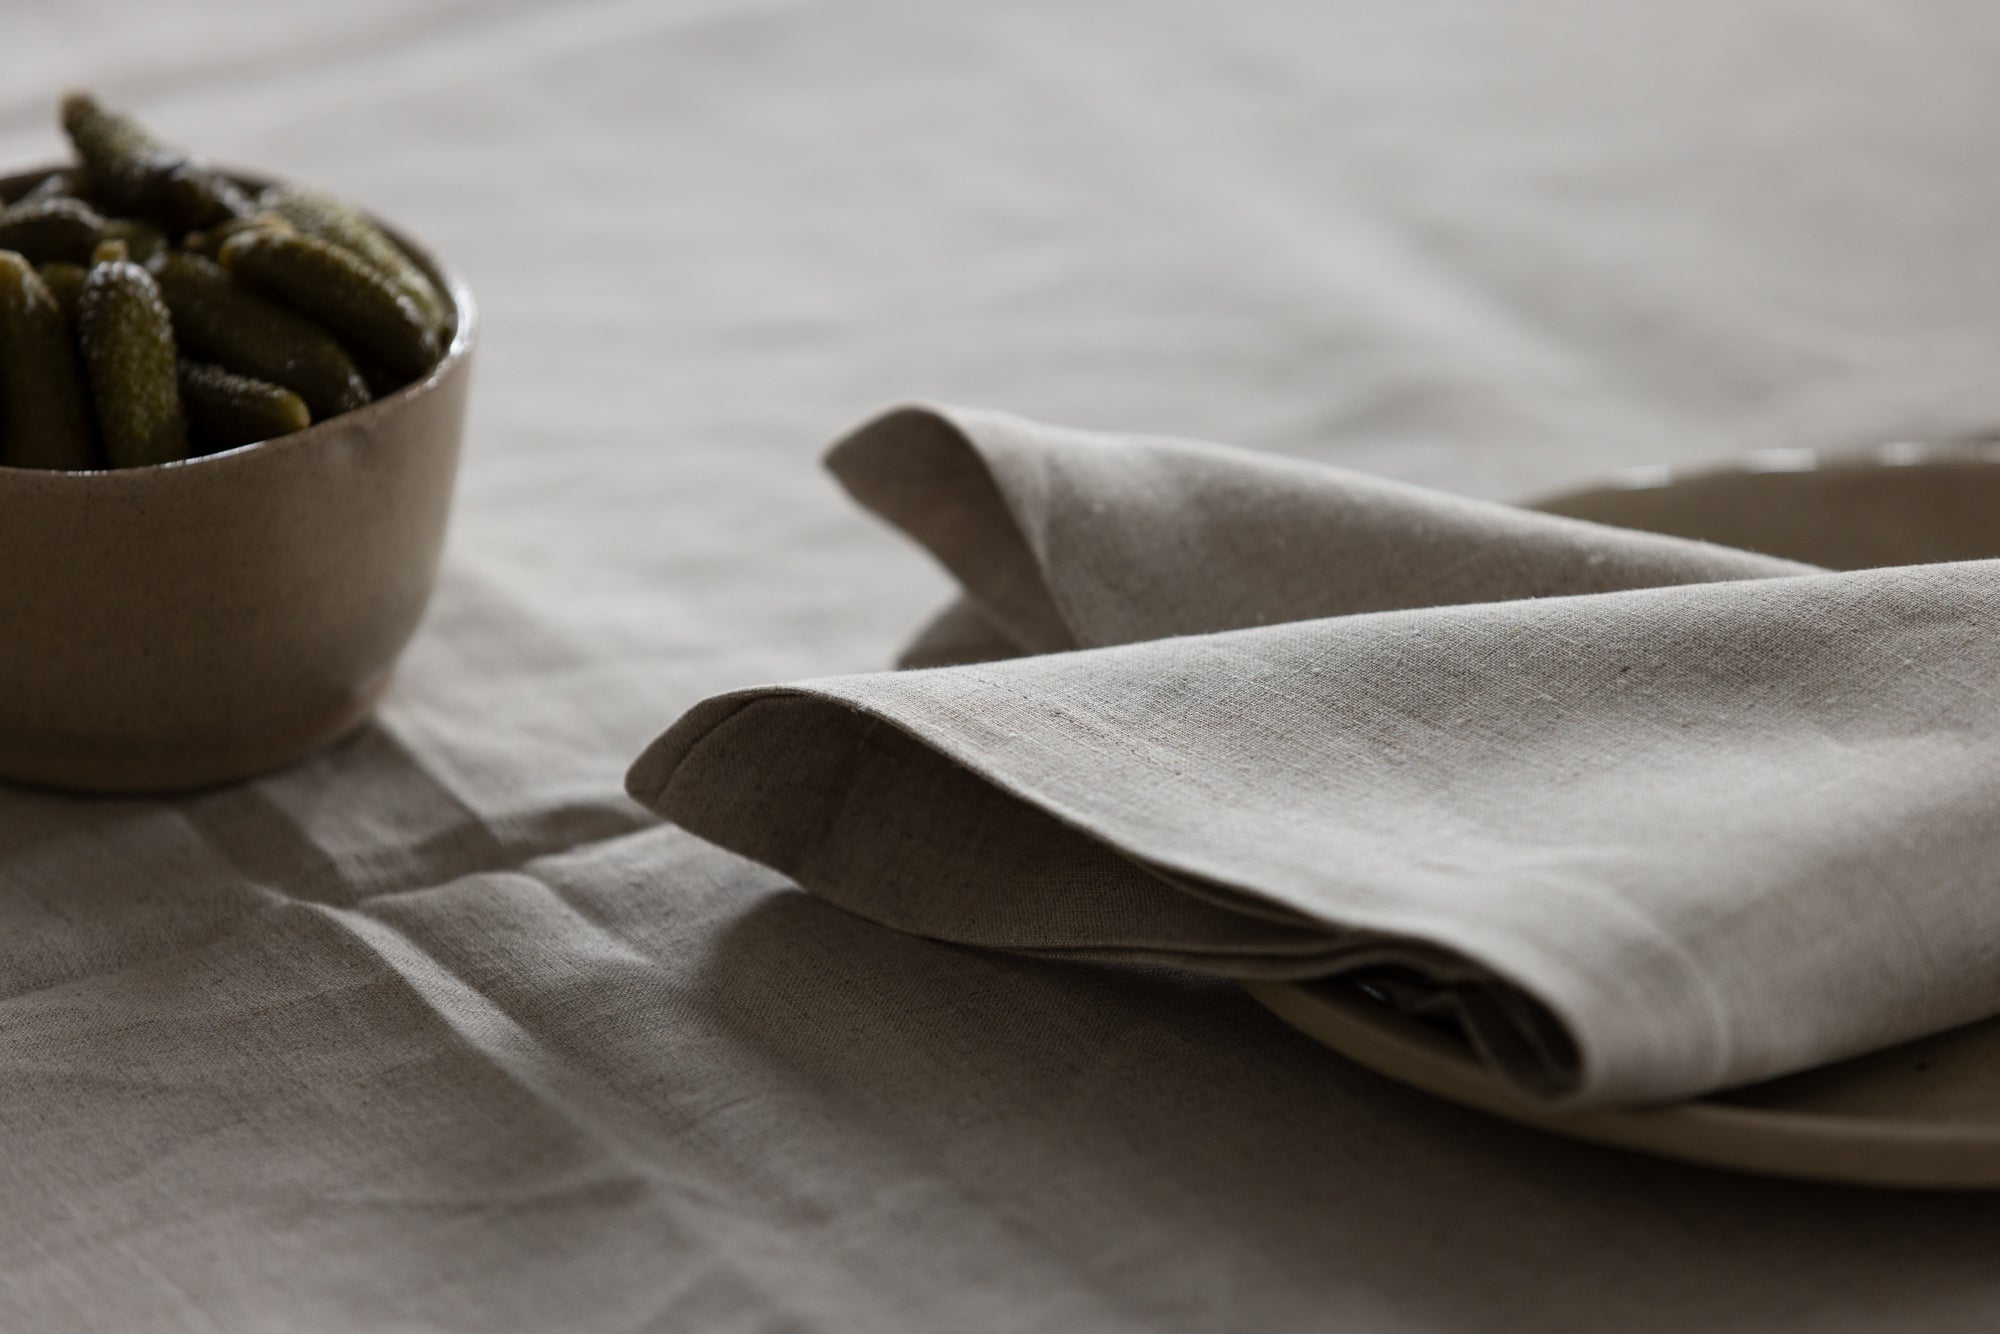 hemp linen napkin - clean edge